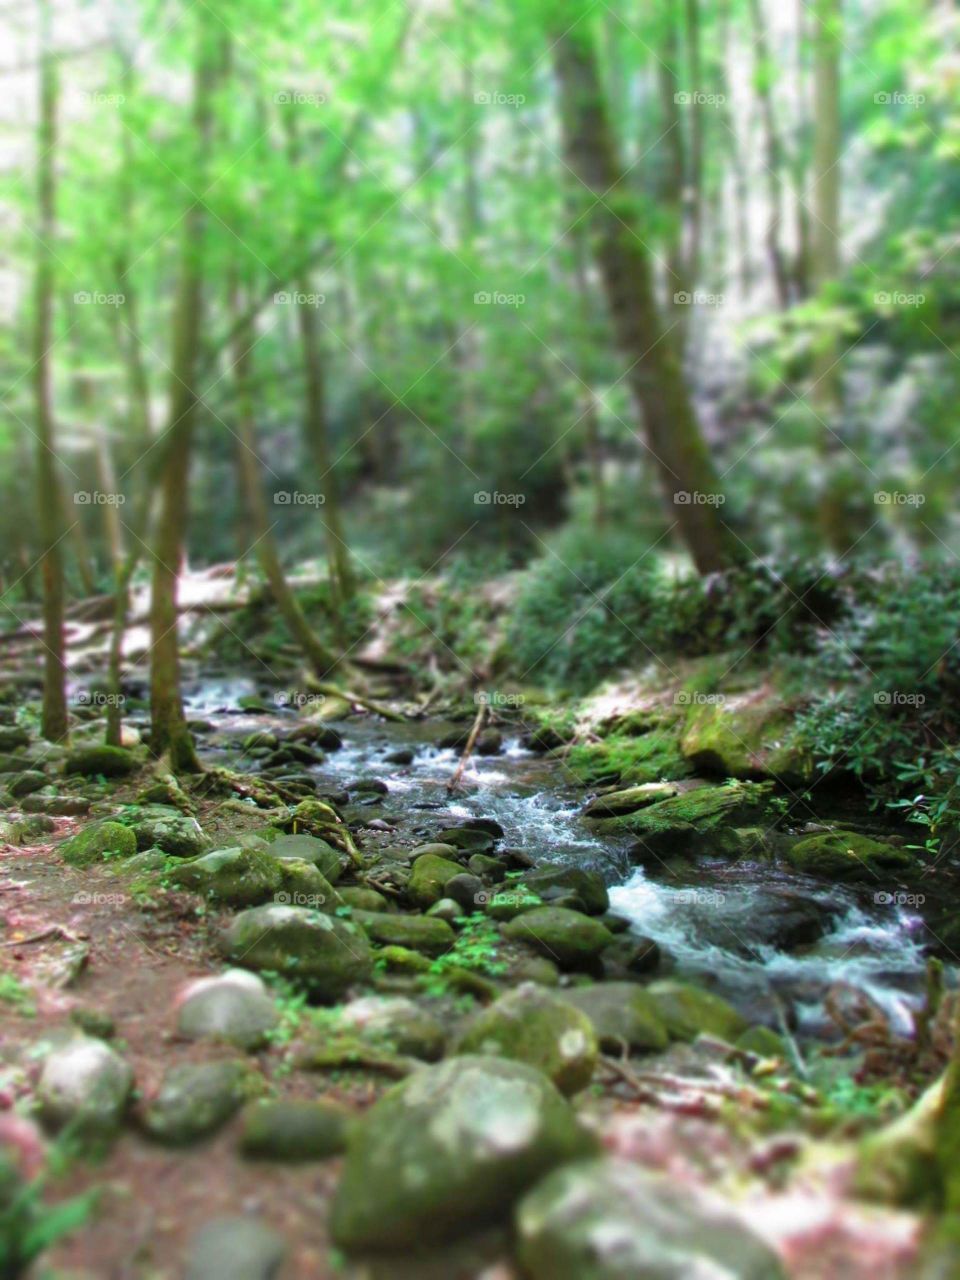 Nature, Water, Wood, Moss, Stream